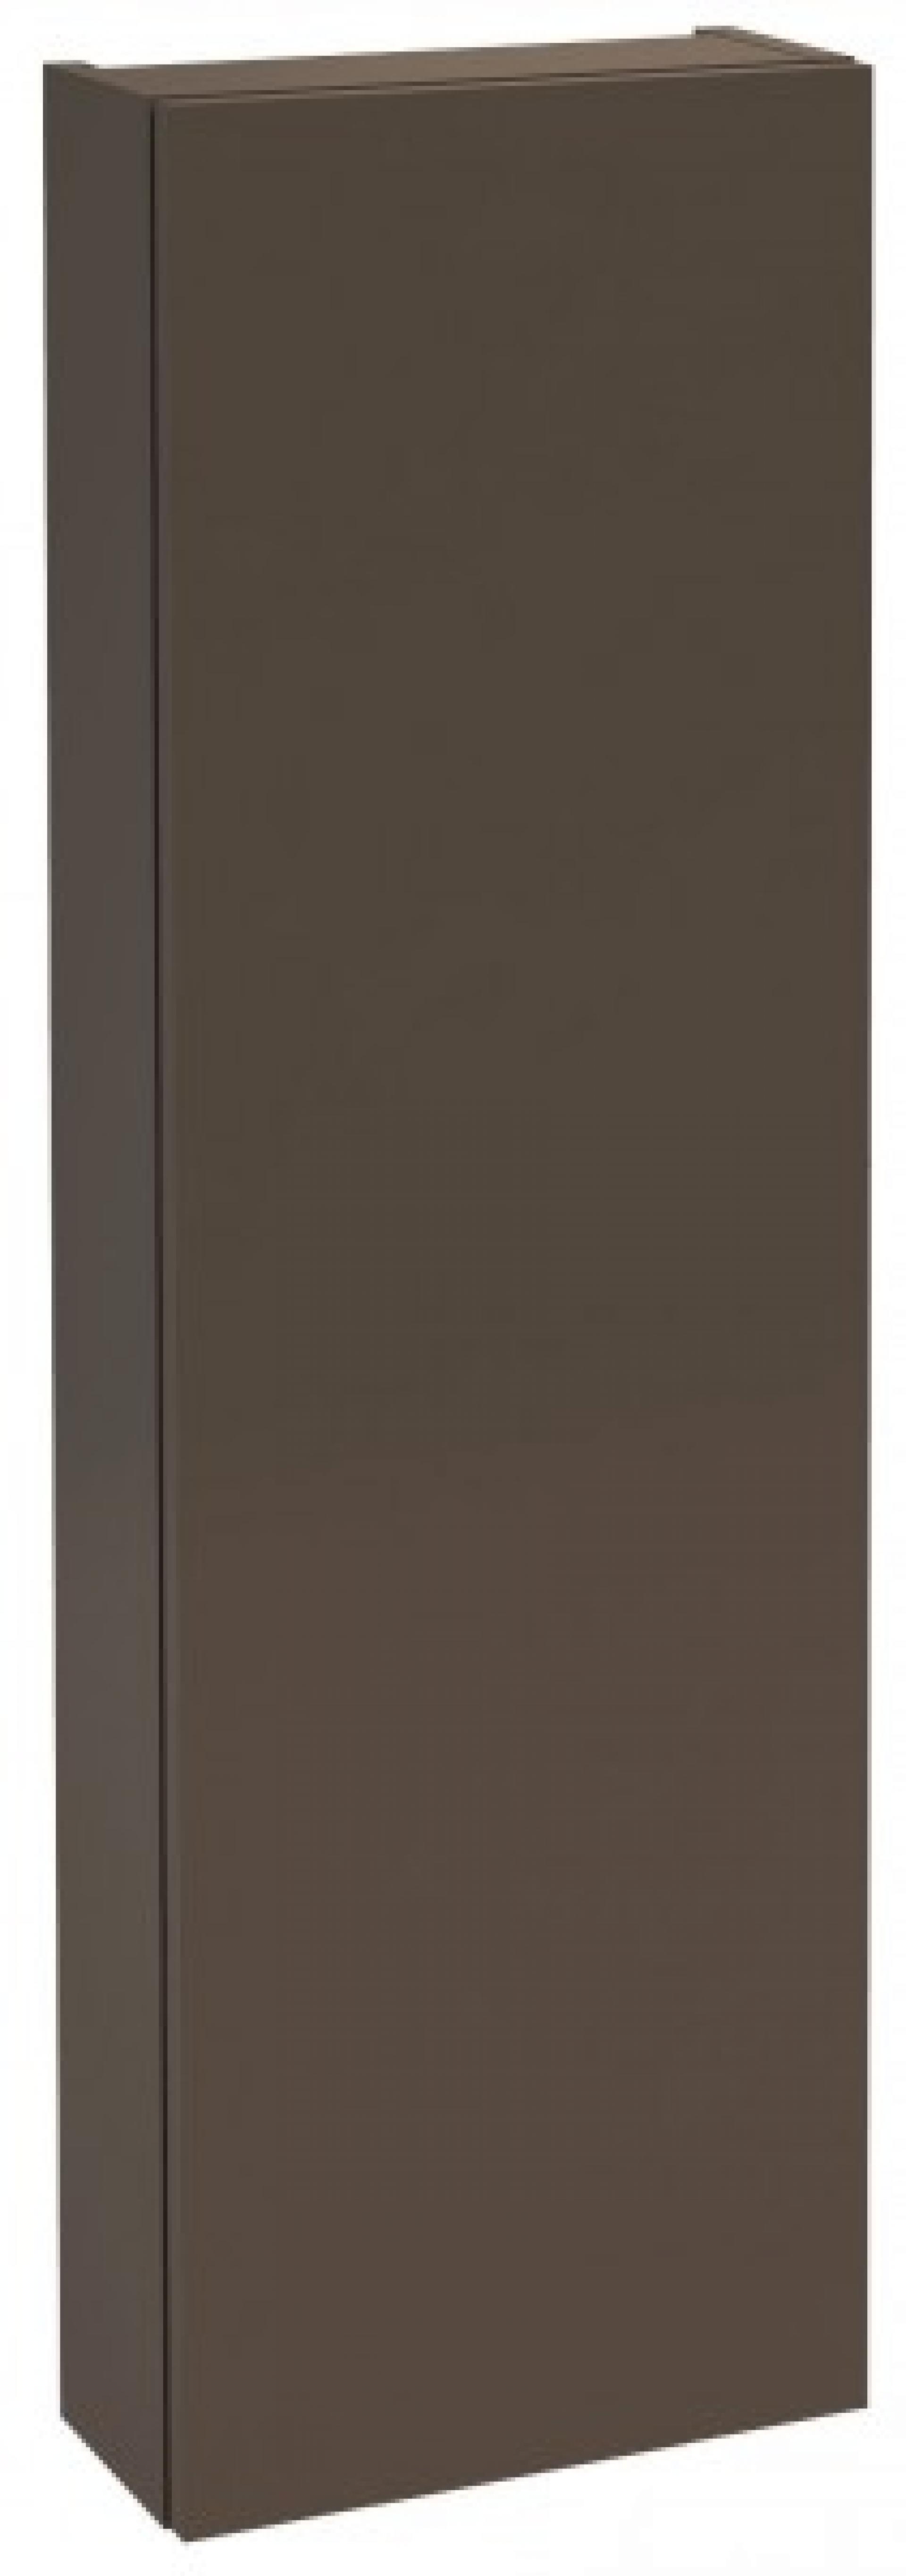 Шкаф-пенал 30 см Jacob Delafon Rythmik EB1059G-G80 левый, светло-коричневый